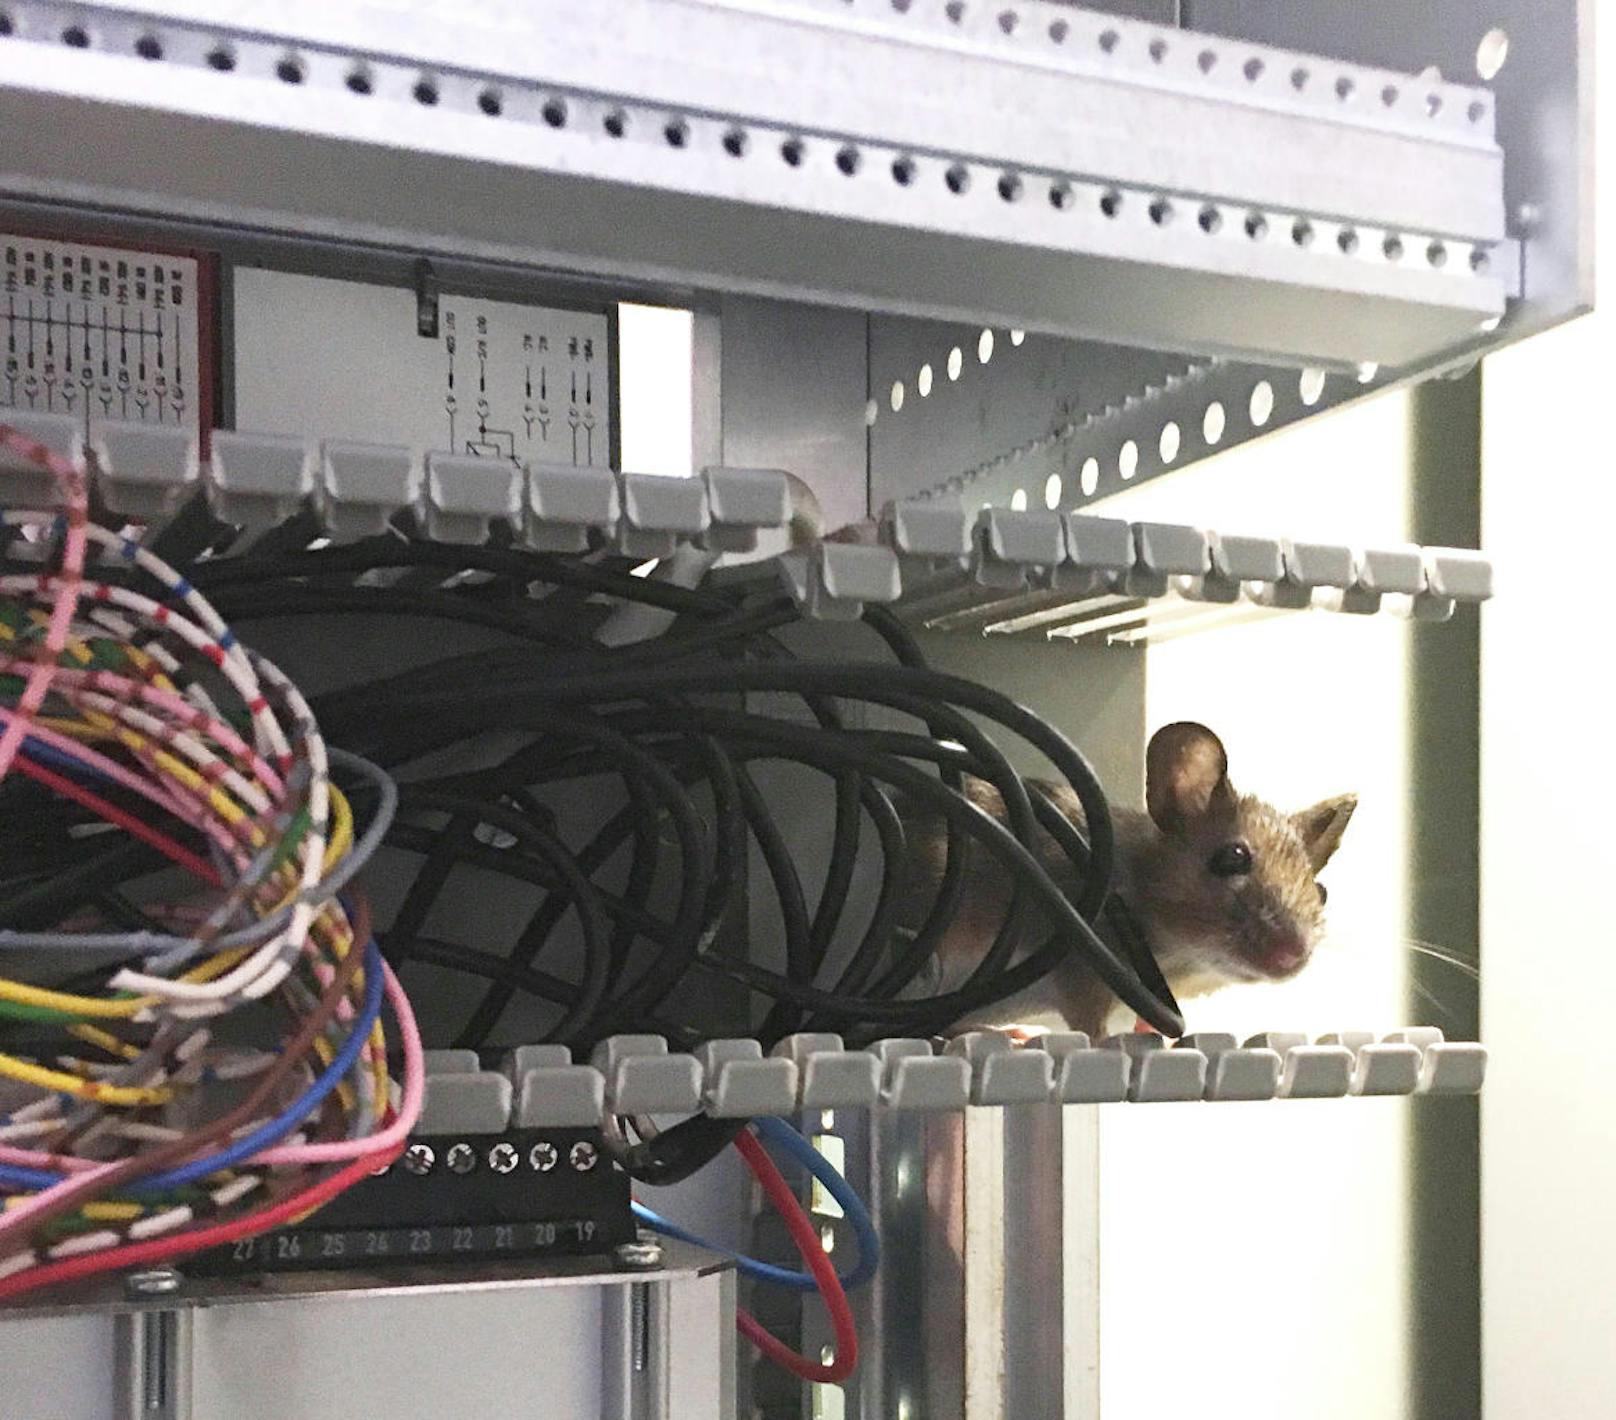 Die Maus knabberte die Isolierung an den Kabeln an.